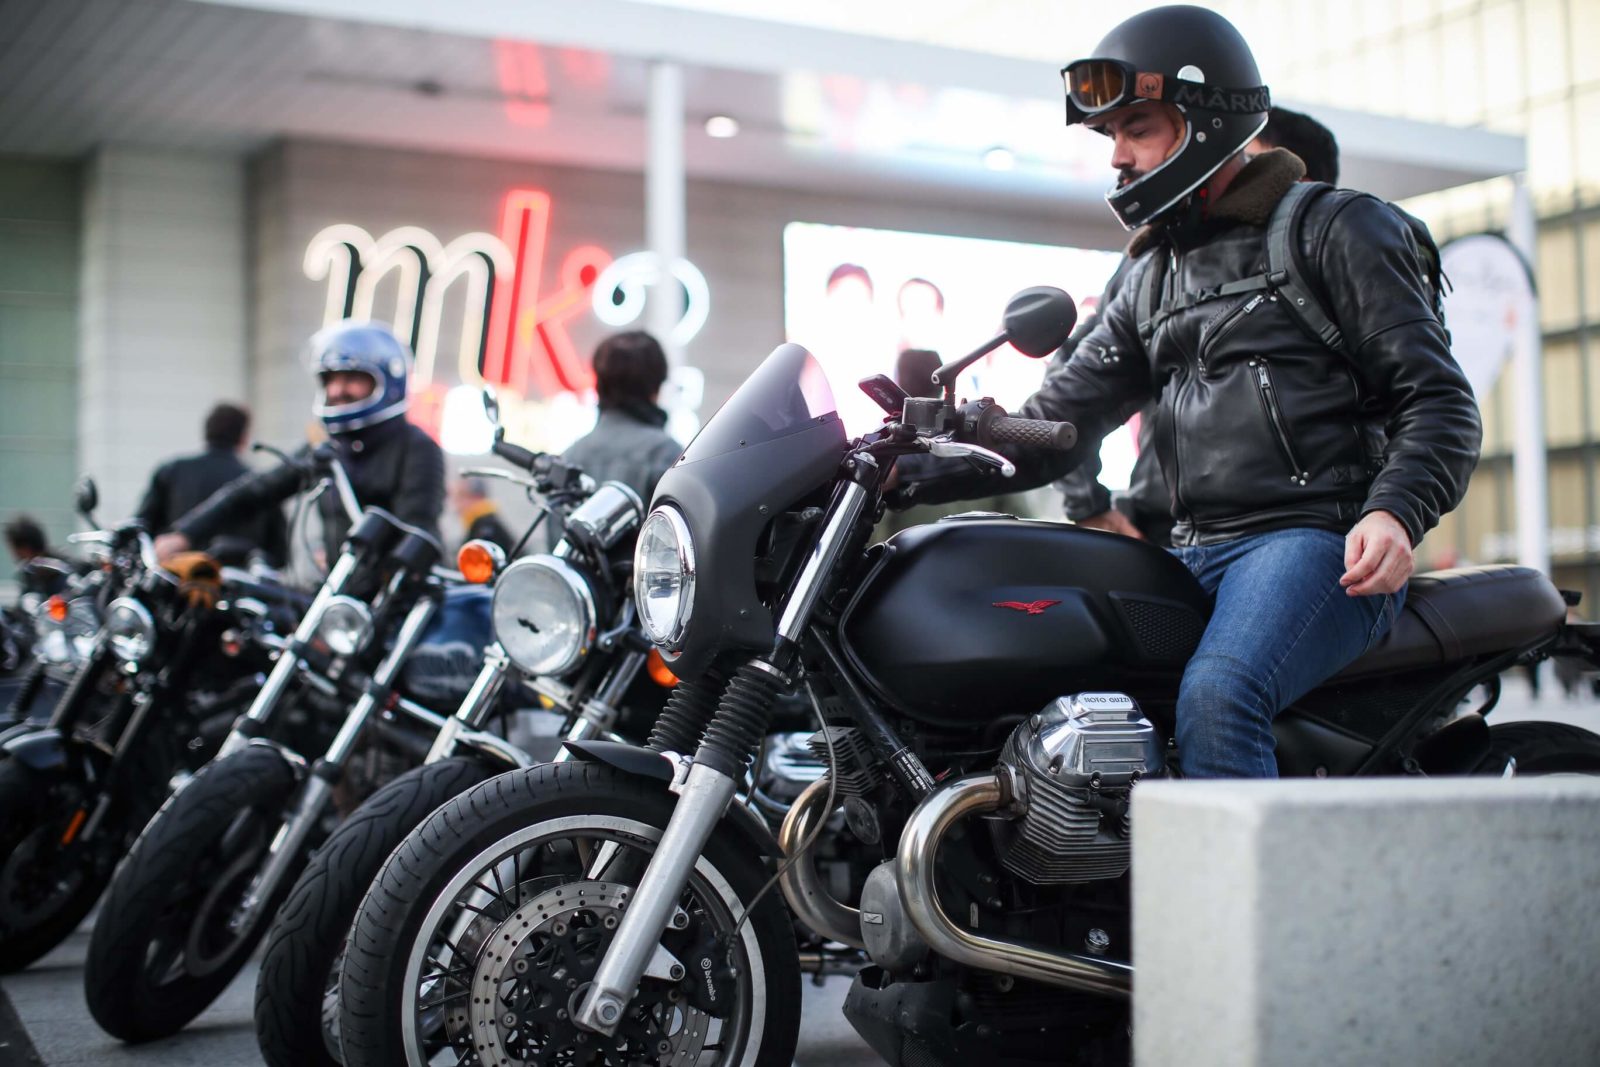 Lionel beylot photo moto Guzzi cafe racer paris bastille